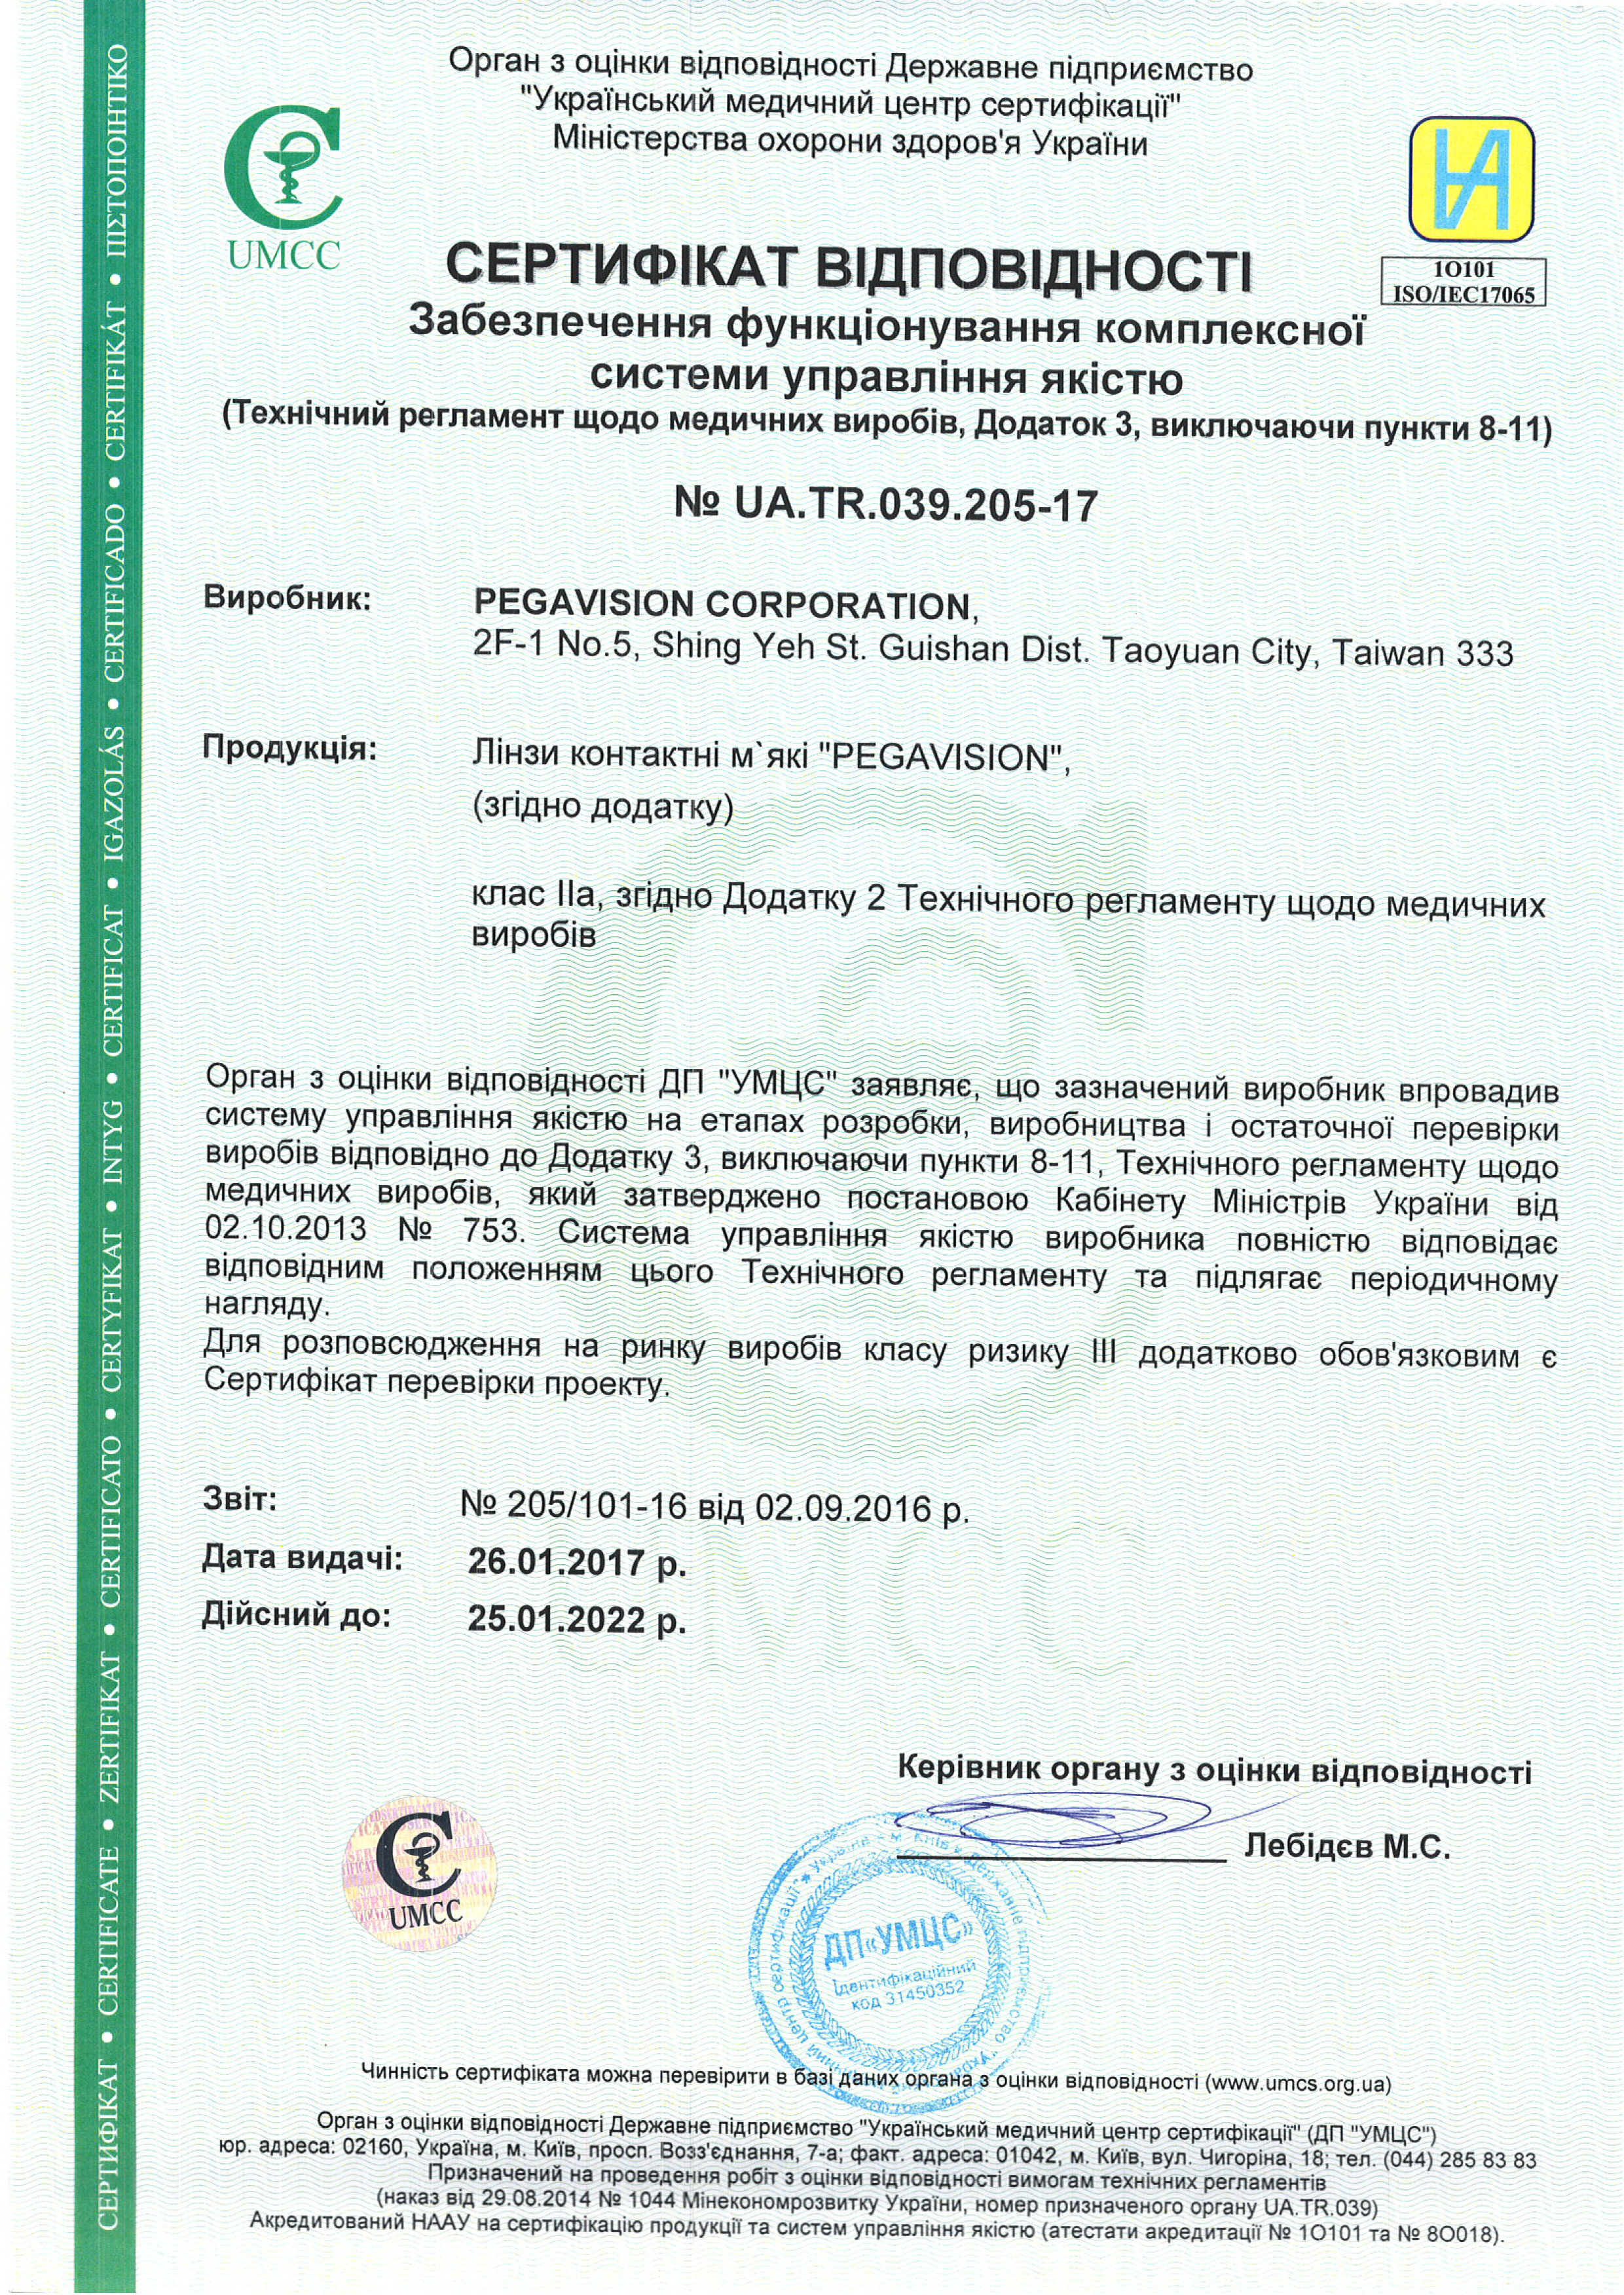 Сертифікат відповідності Pegavision